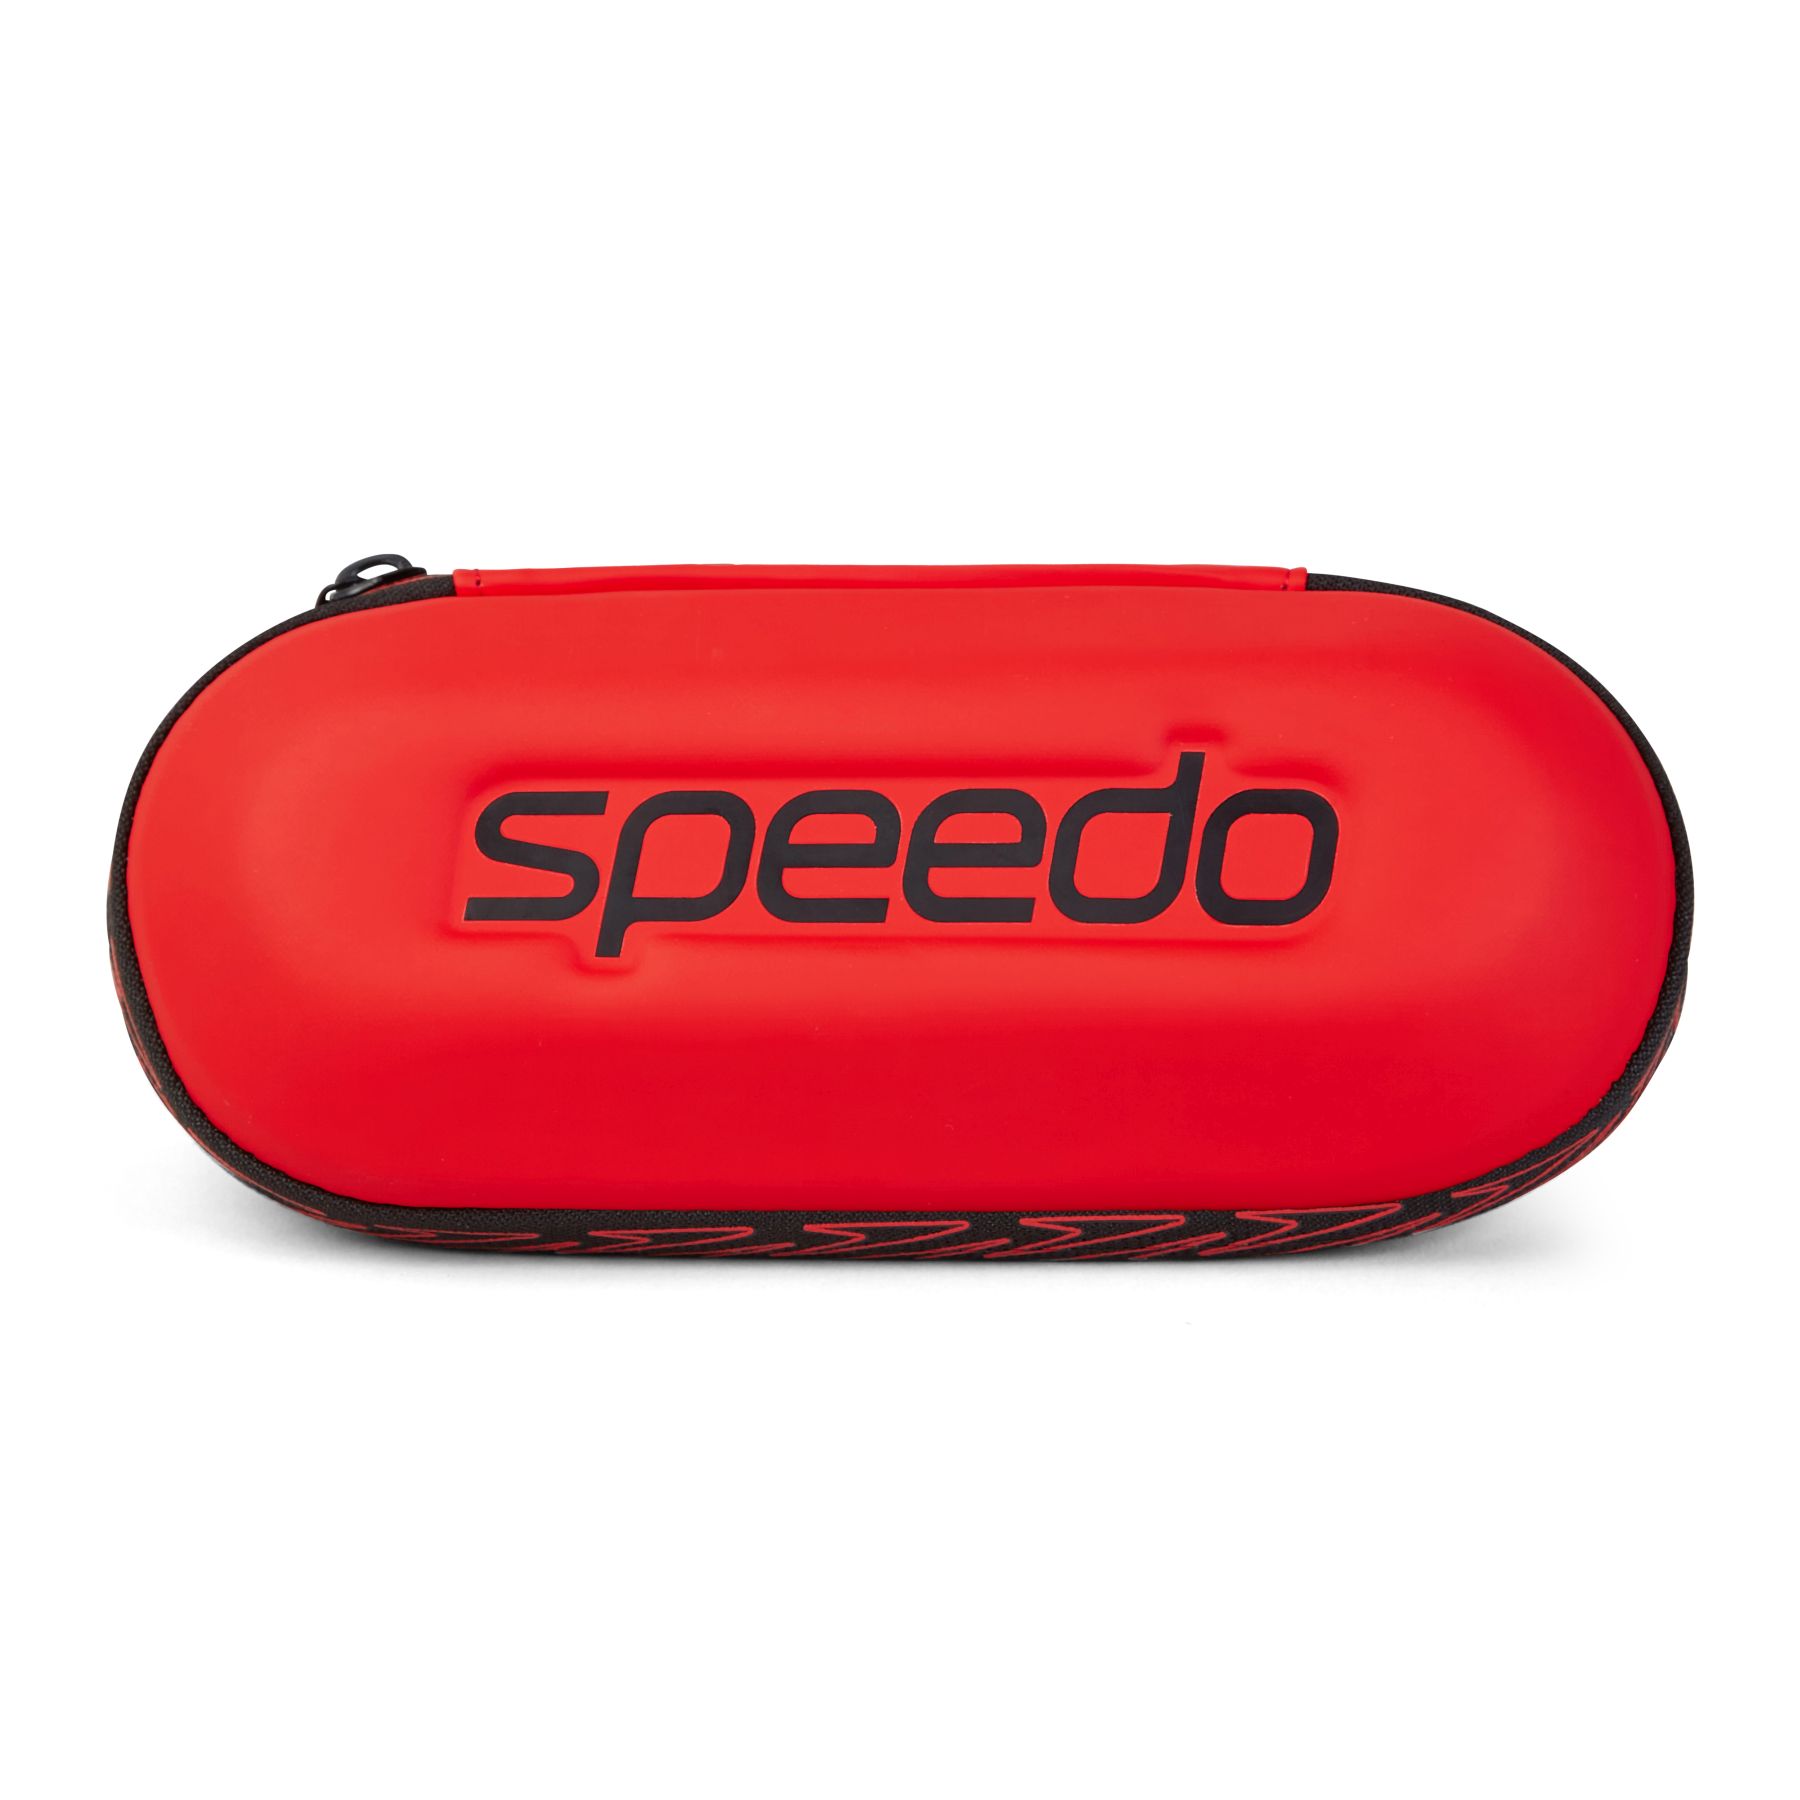 Productfoto van Speedo Brillenkoker - rood